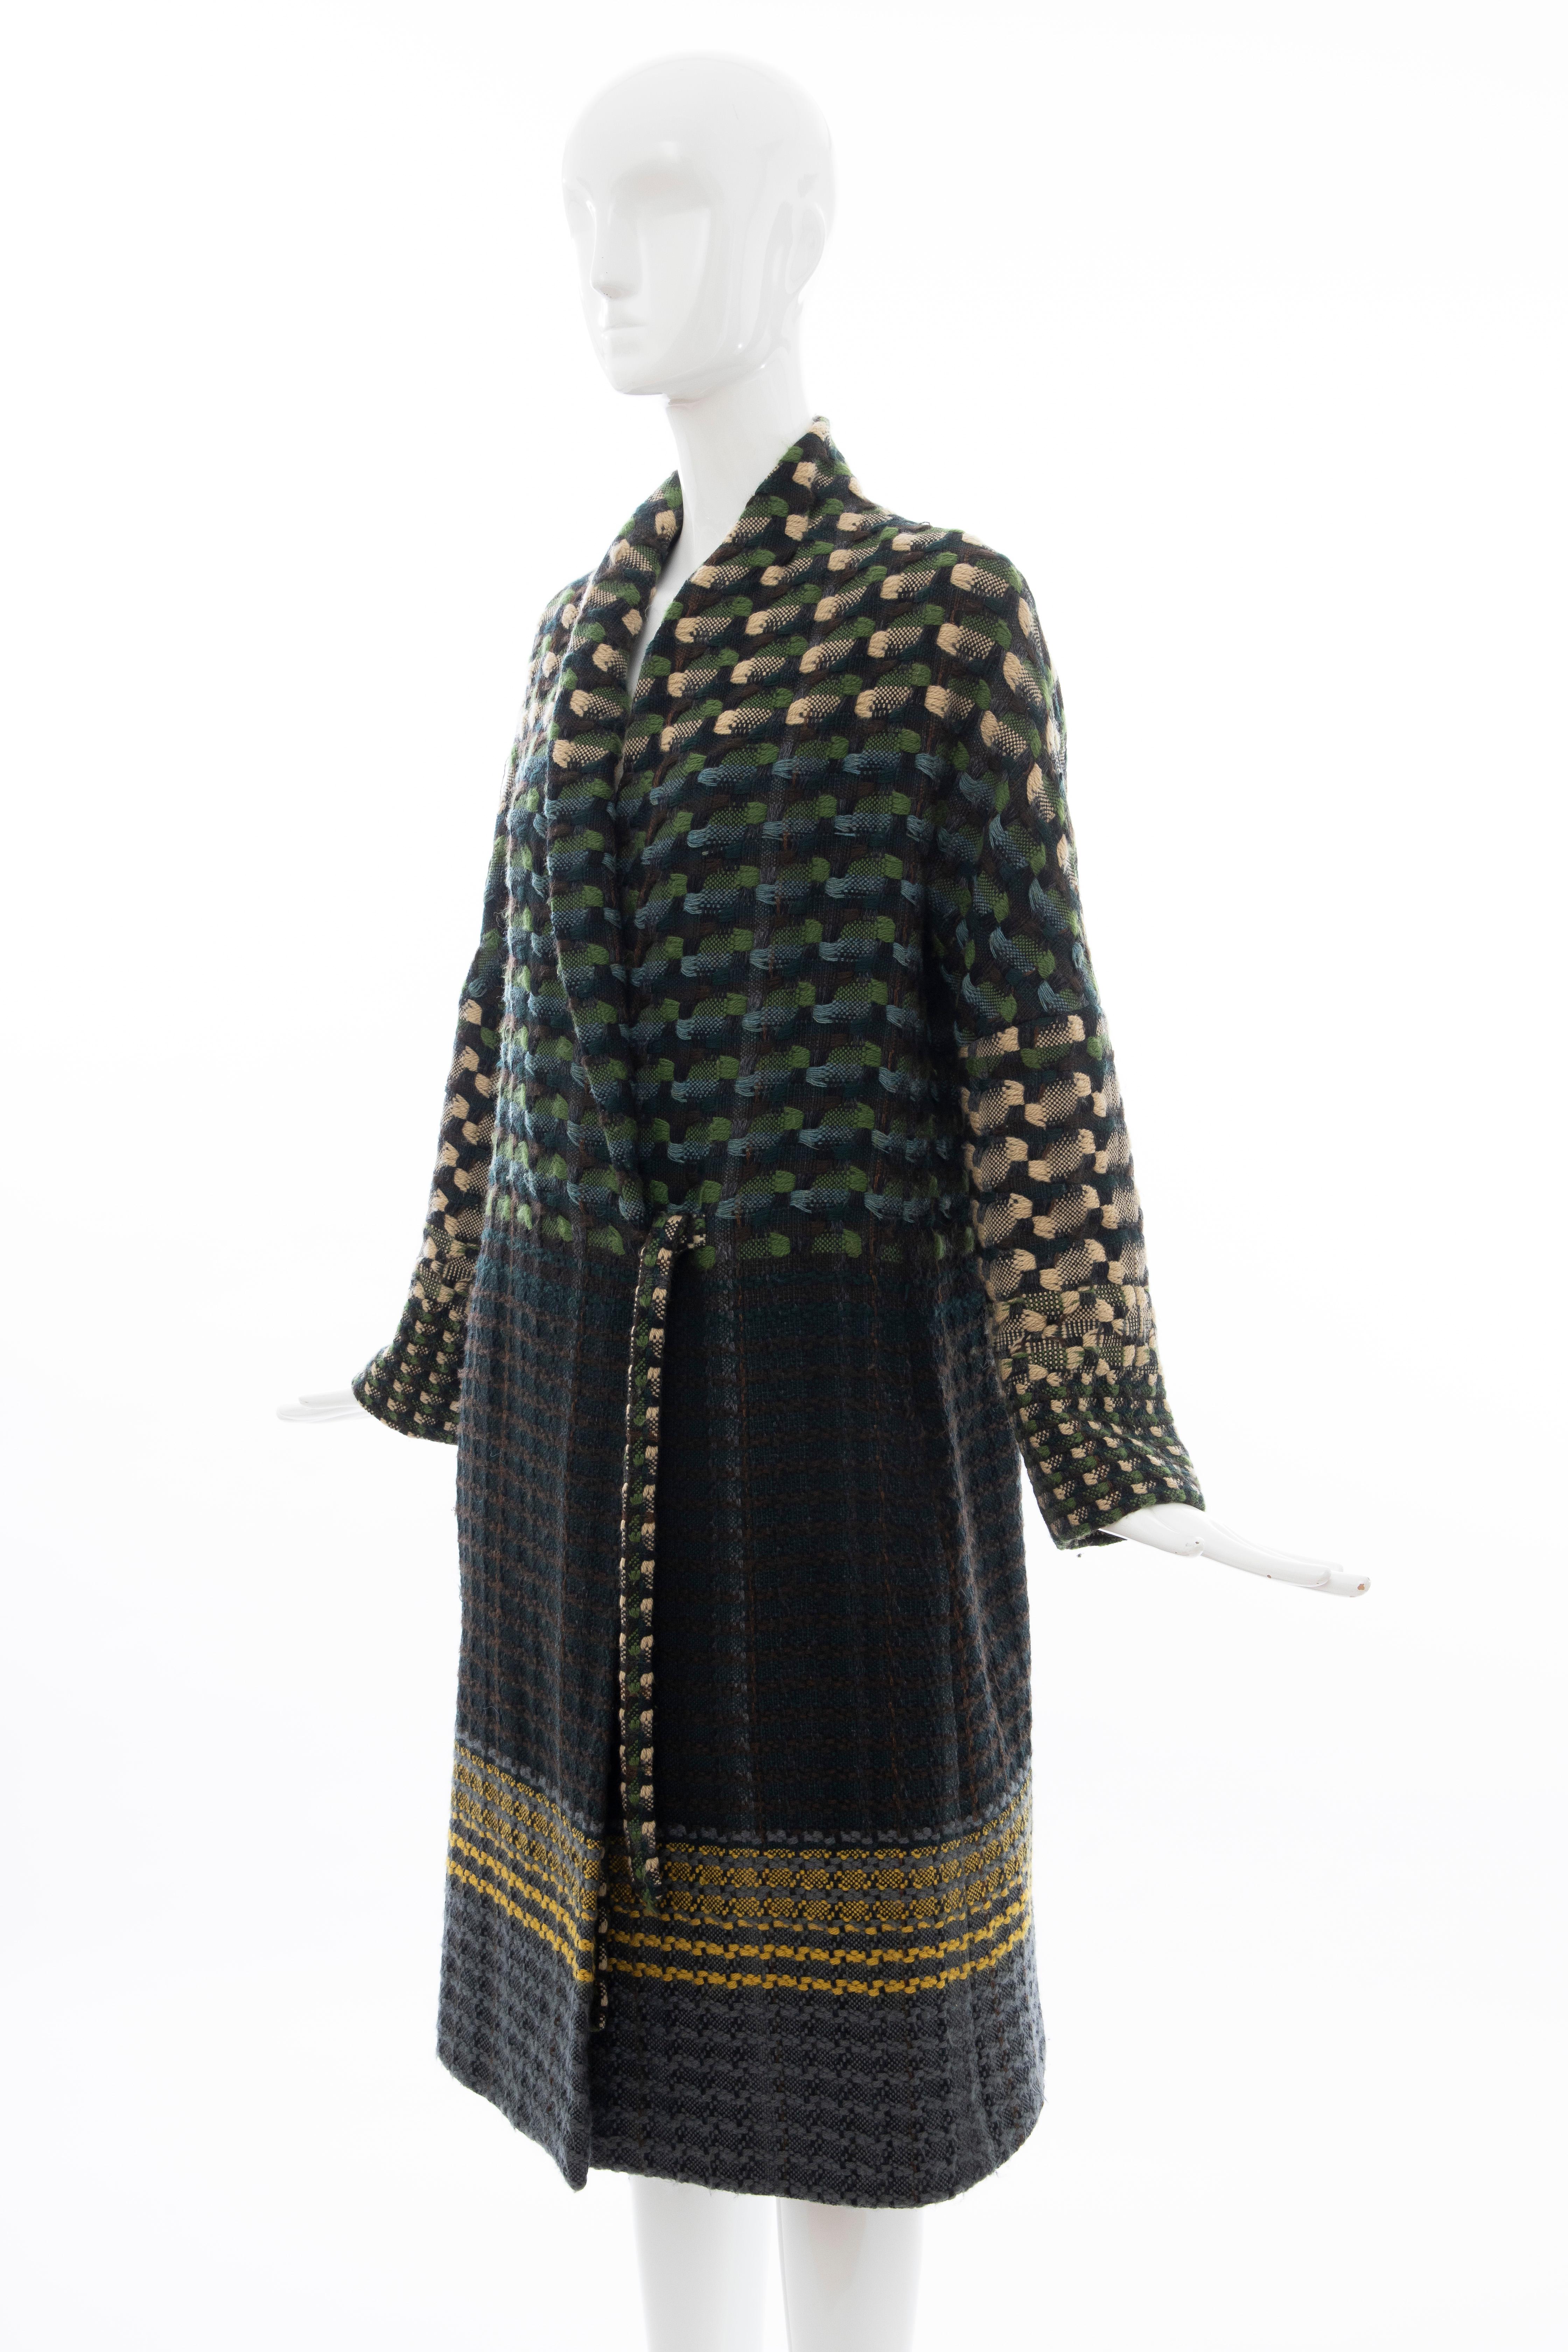 Dries van Noten Runway Wool Plain Weave Tweed Coat, Fall 2004 For Sale 5